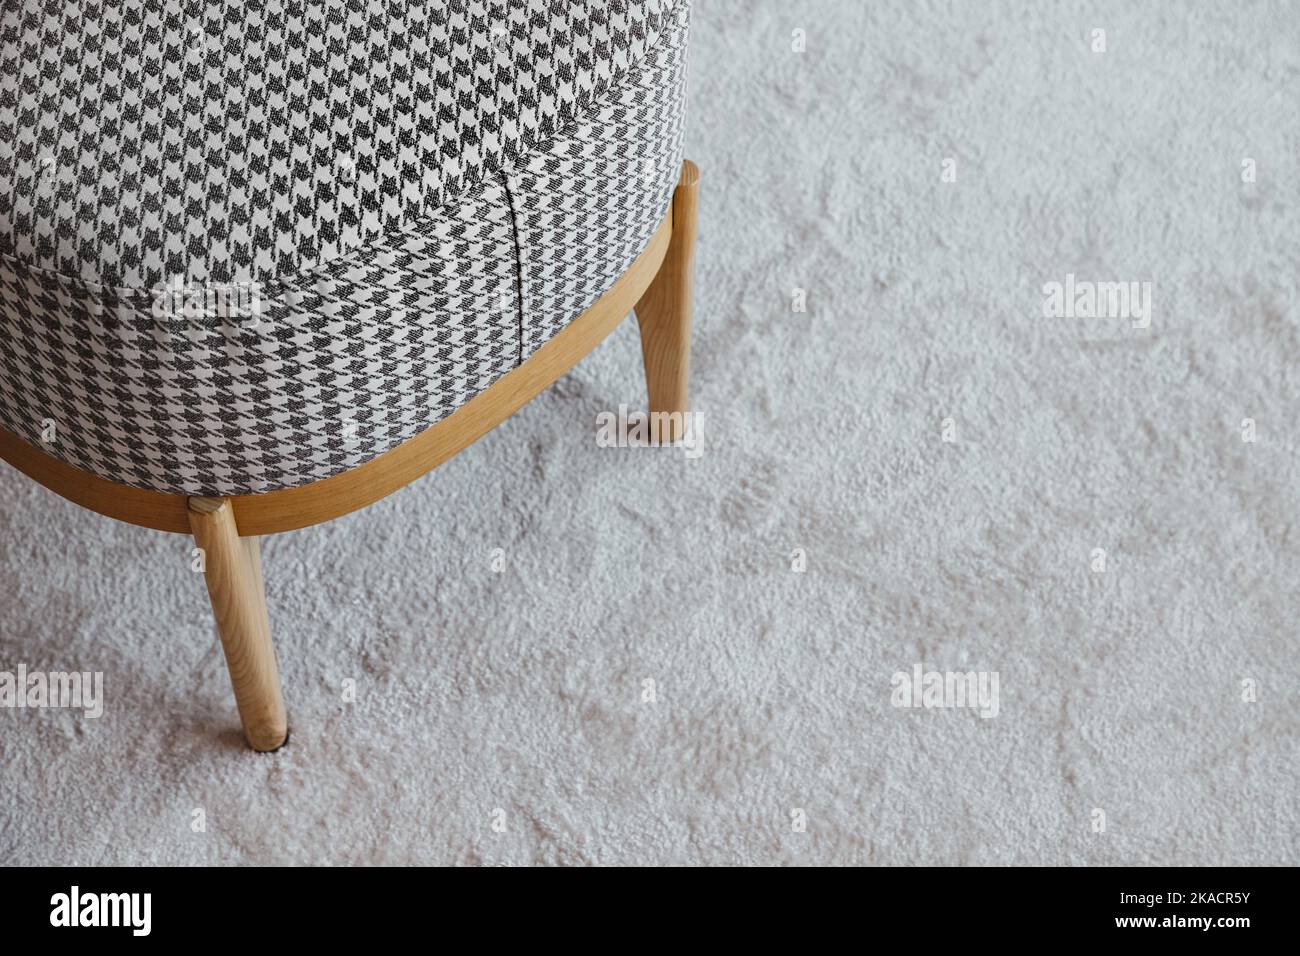 Pouf a scacchi con gambe in legno su soffice tappeto, vista dall'alto con spazio libero, arredamento moderno in soggiorno, design Foto Stock